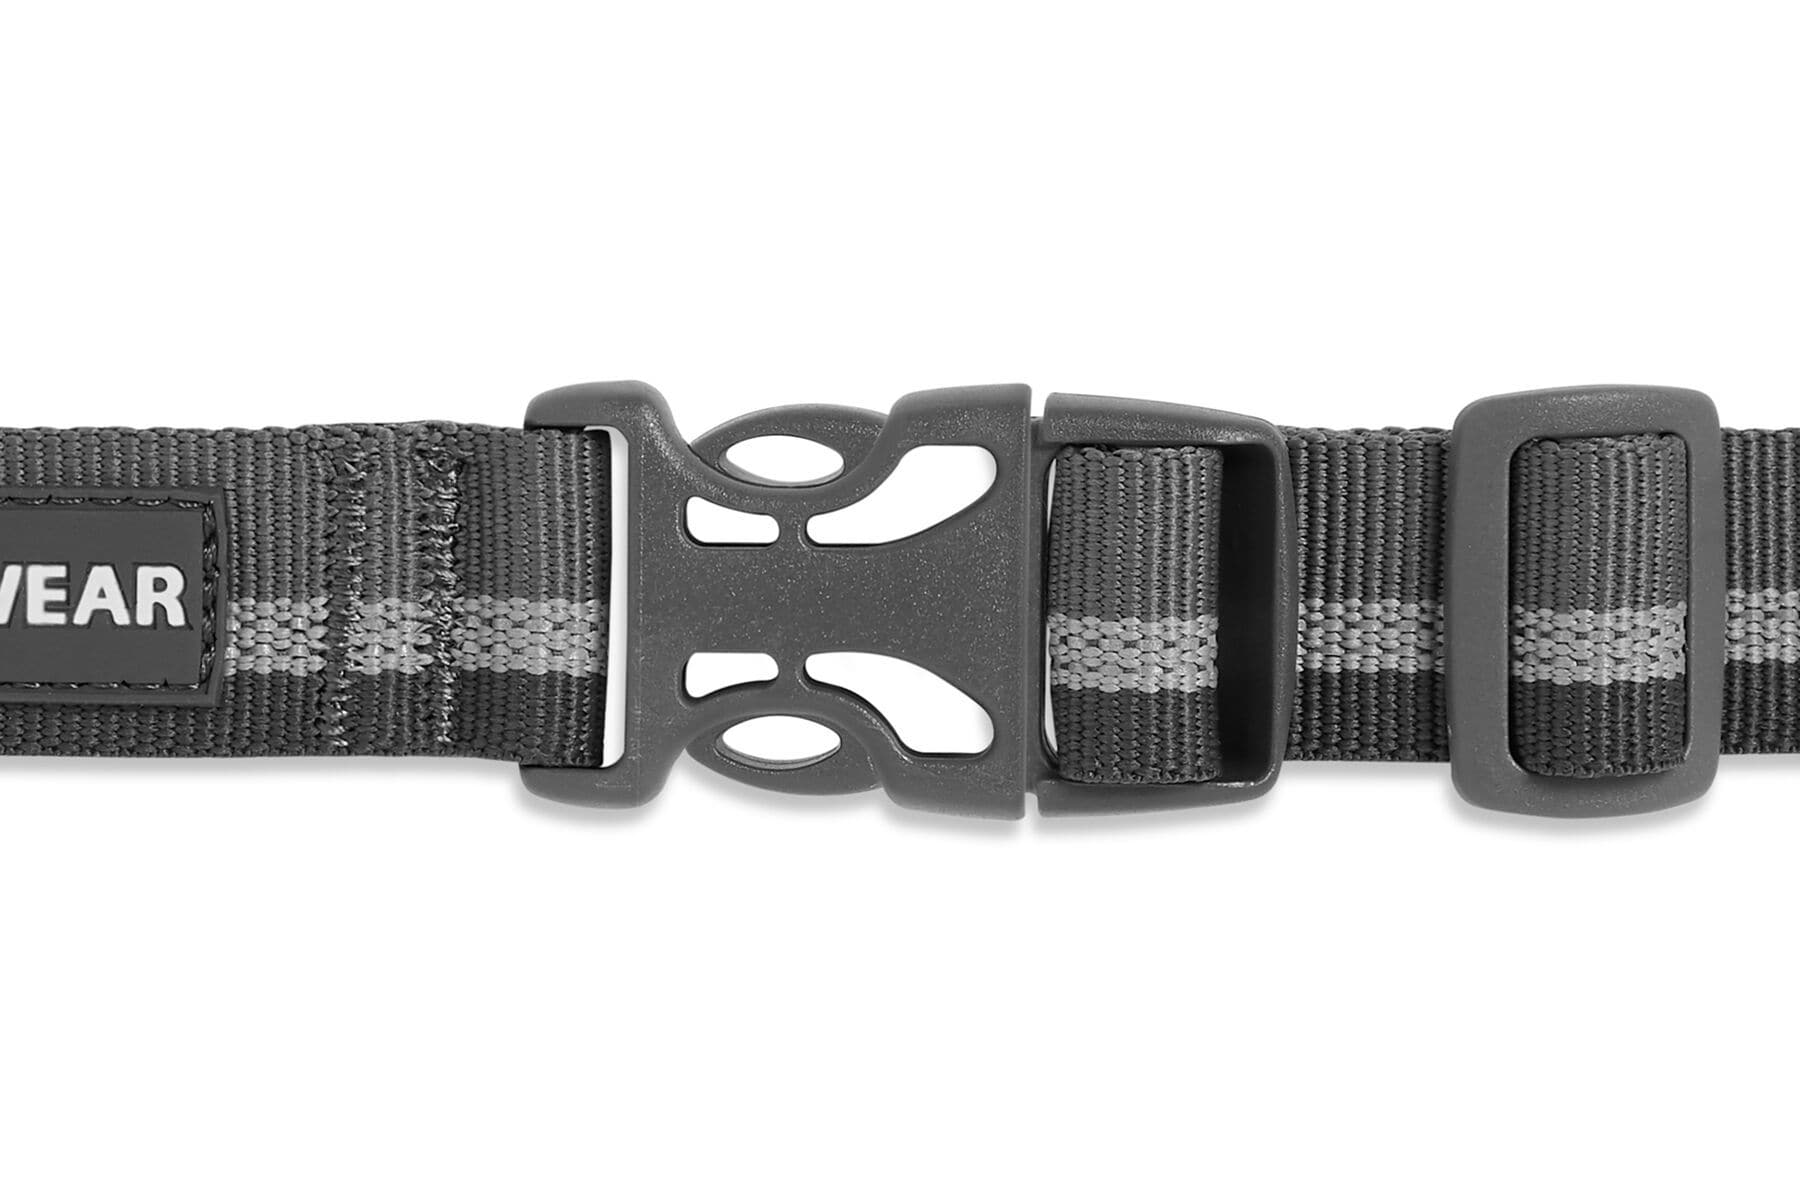 Collar para Perros Modelo WEB Reaction en Gris (Granite Gray) - Ruffwear